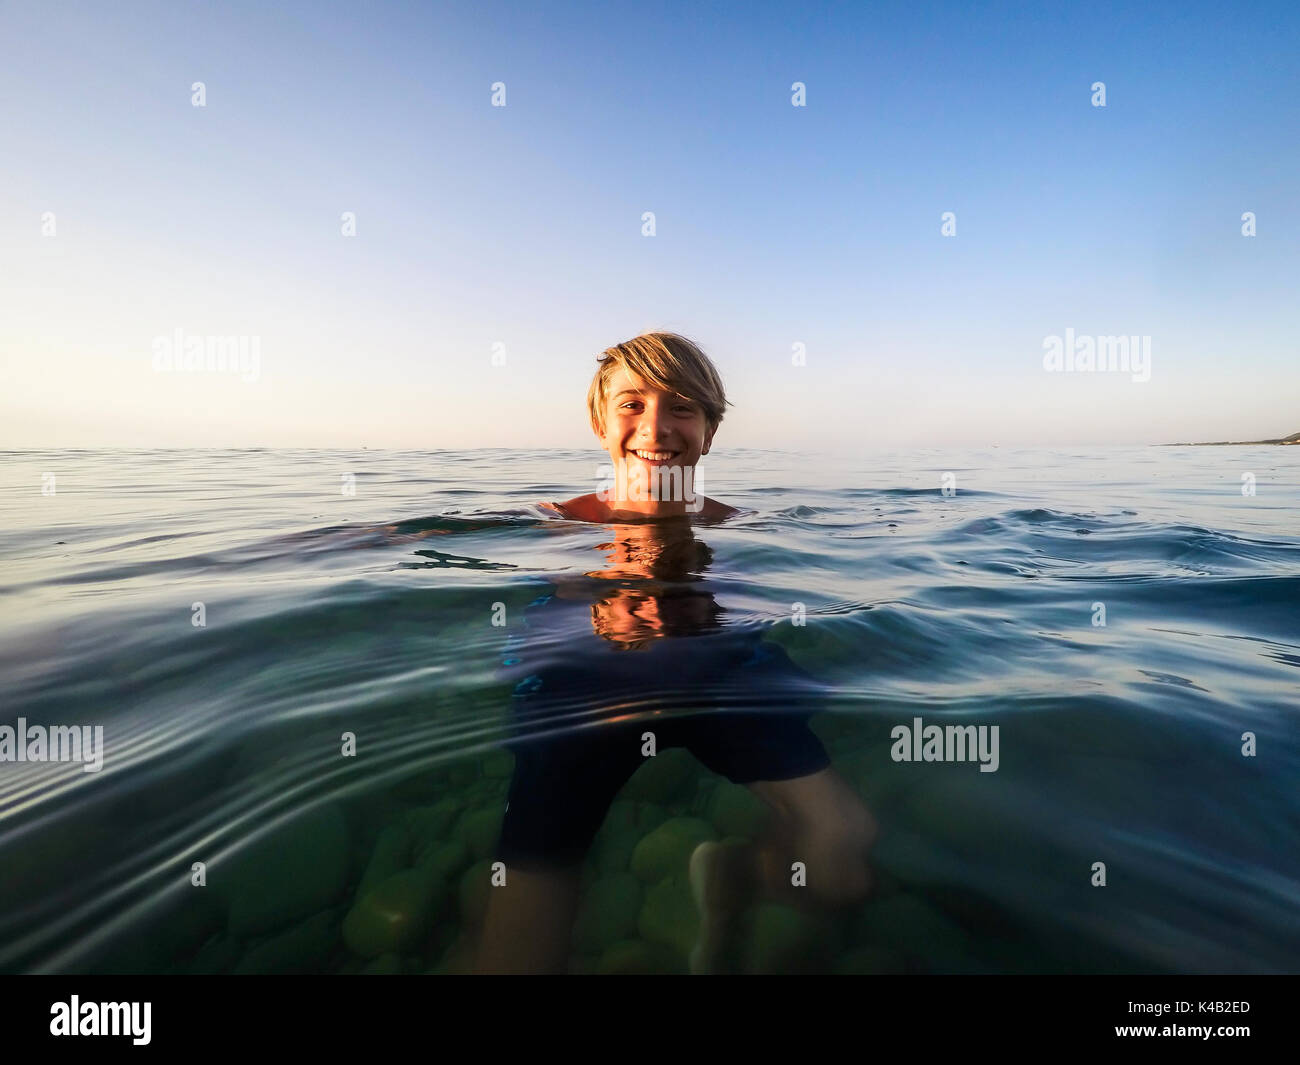 Adolescent nager dans la mer - estivales - Sicile mer méditerranée Banque D'Images